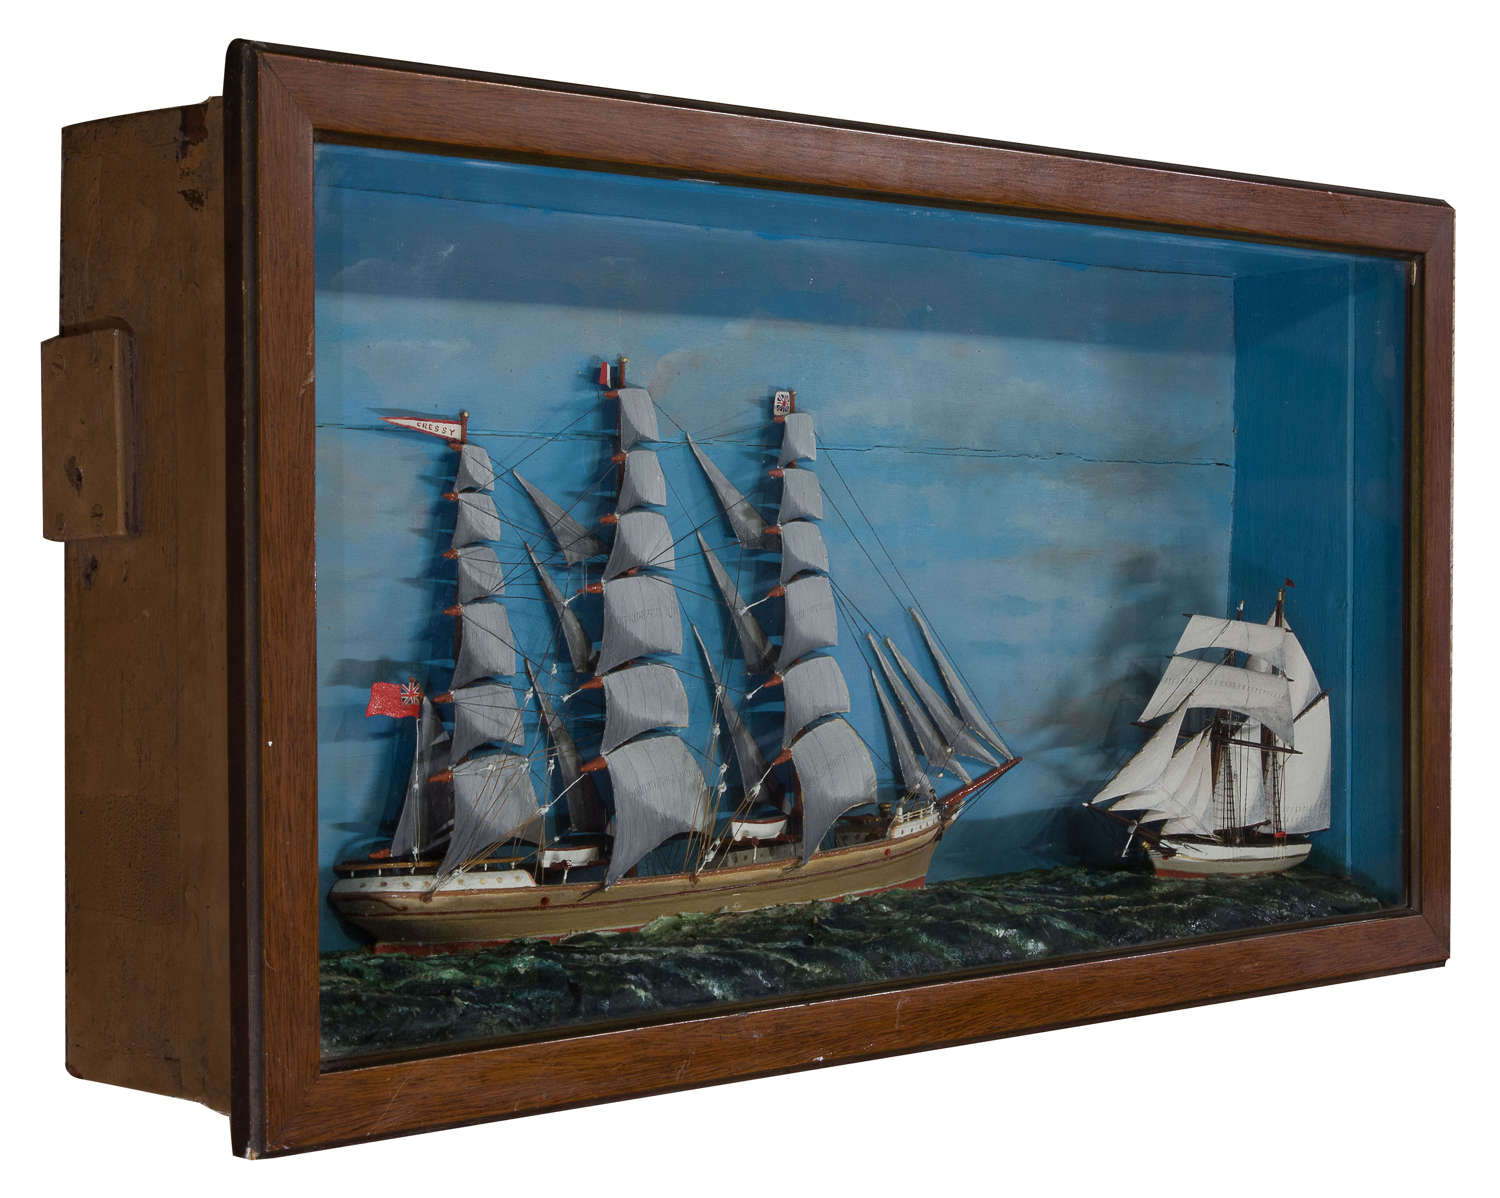 Large marine diorama c1890